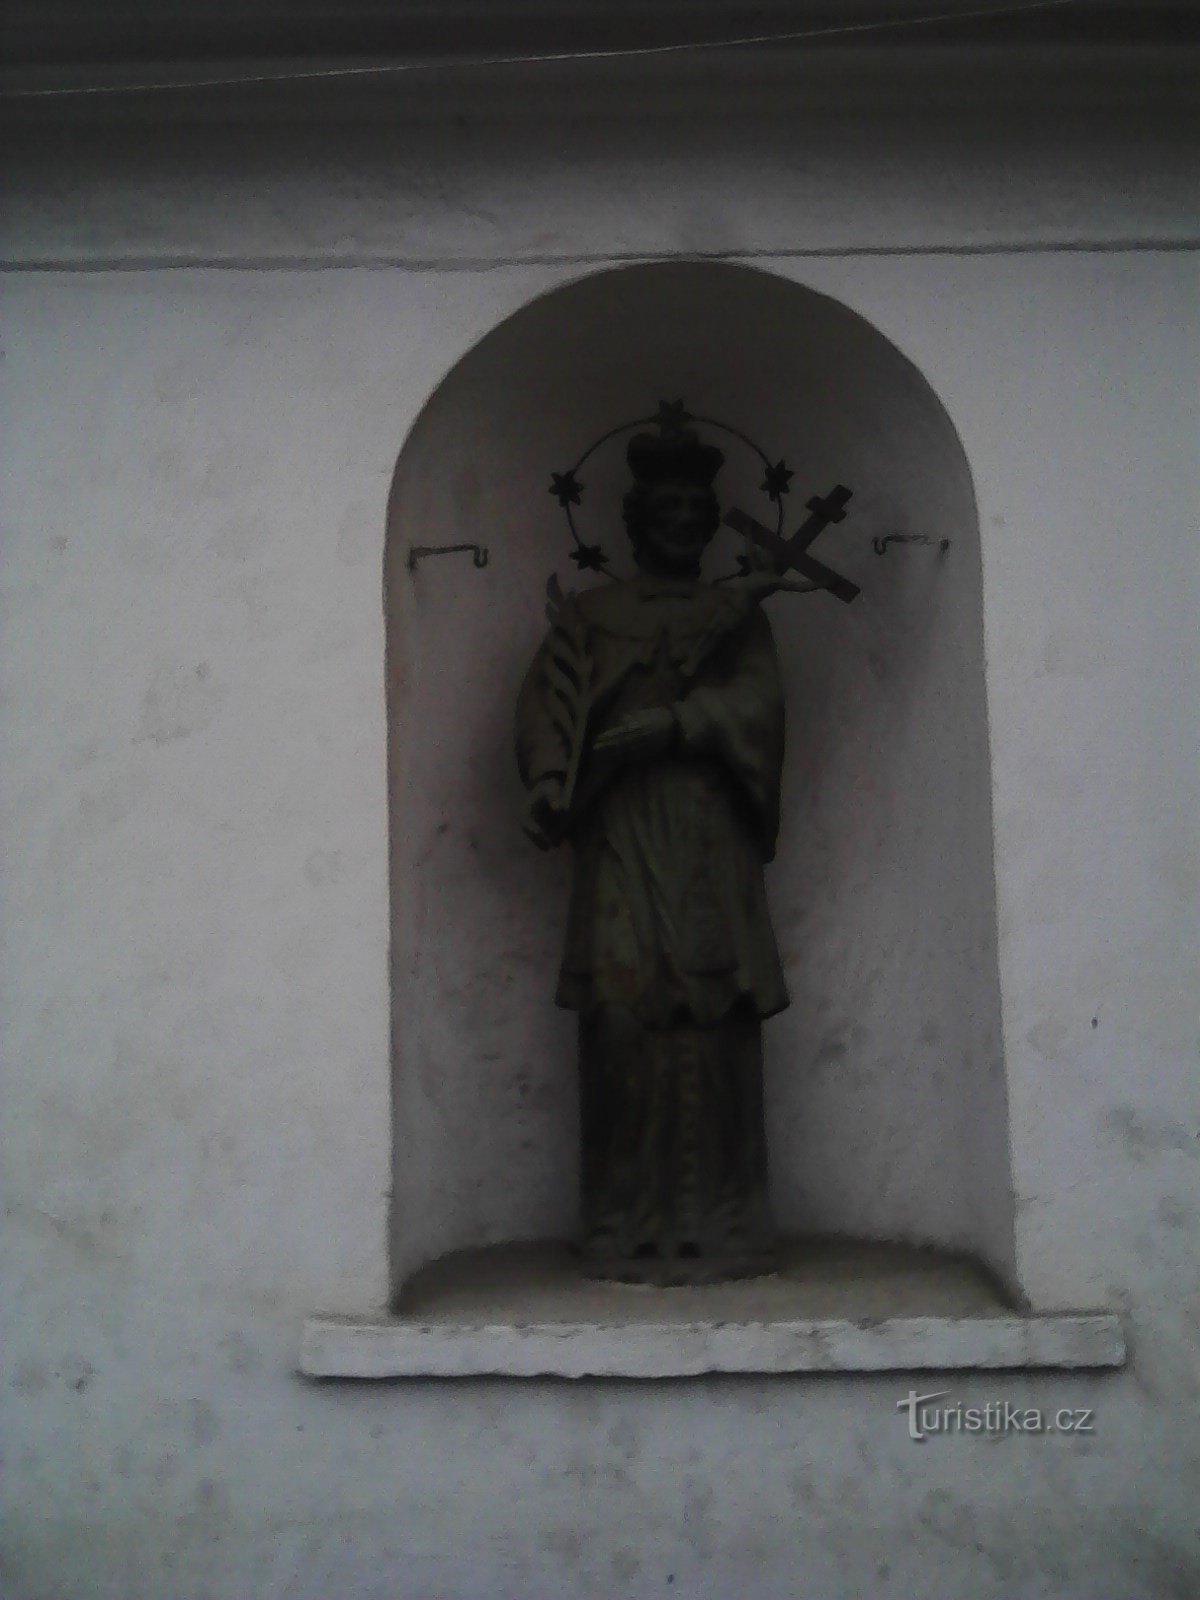 2. En statue af helgenen på et hus i Obratani.